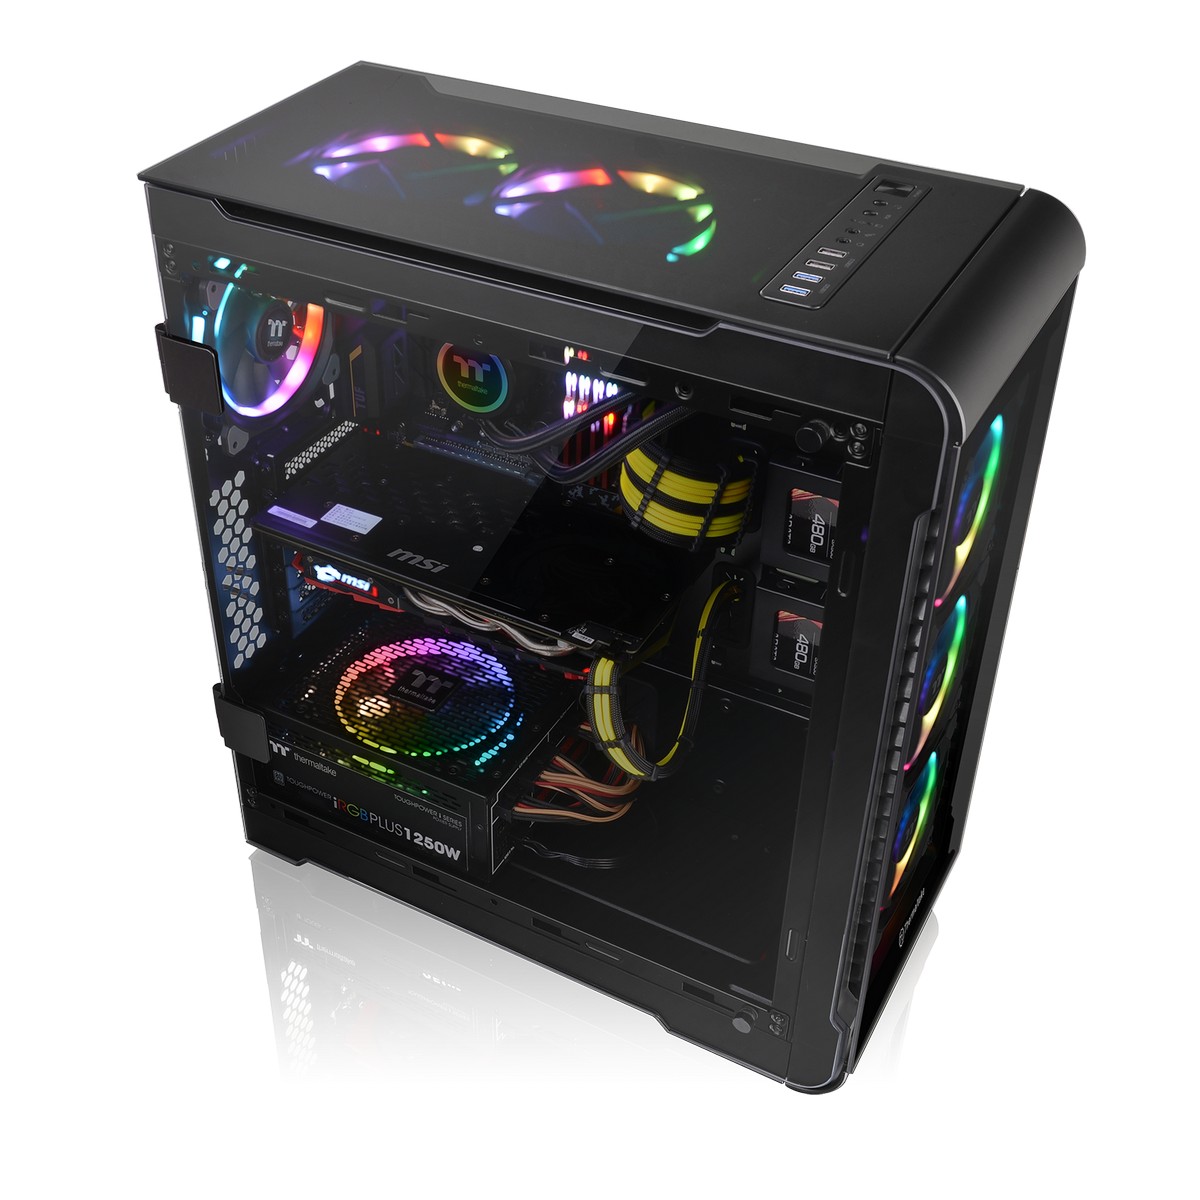 Thermaltake - Thermaltake View 32 RGB Midi Tower Gaming Case - Black Tempered Glass